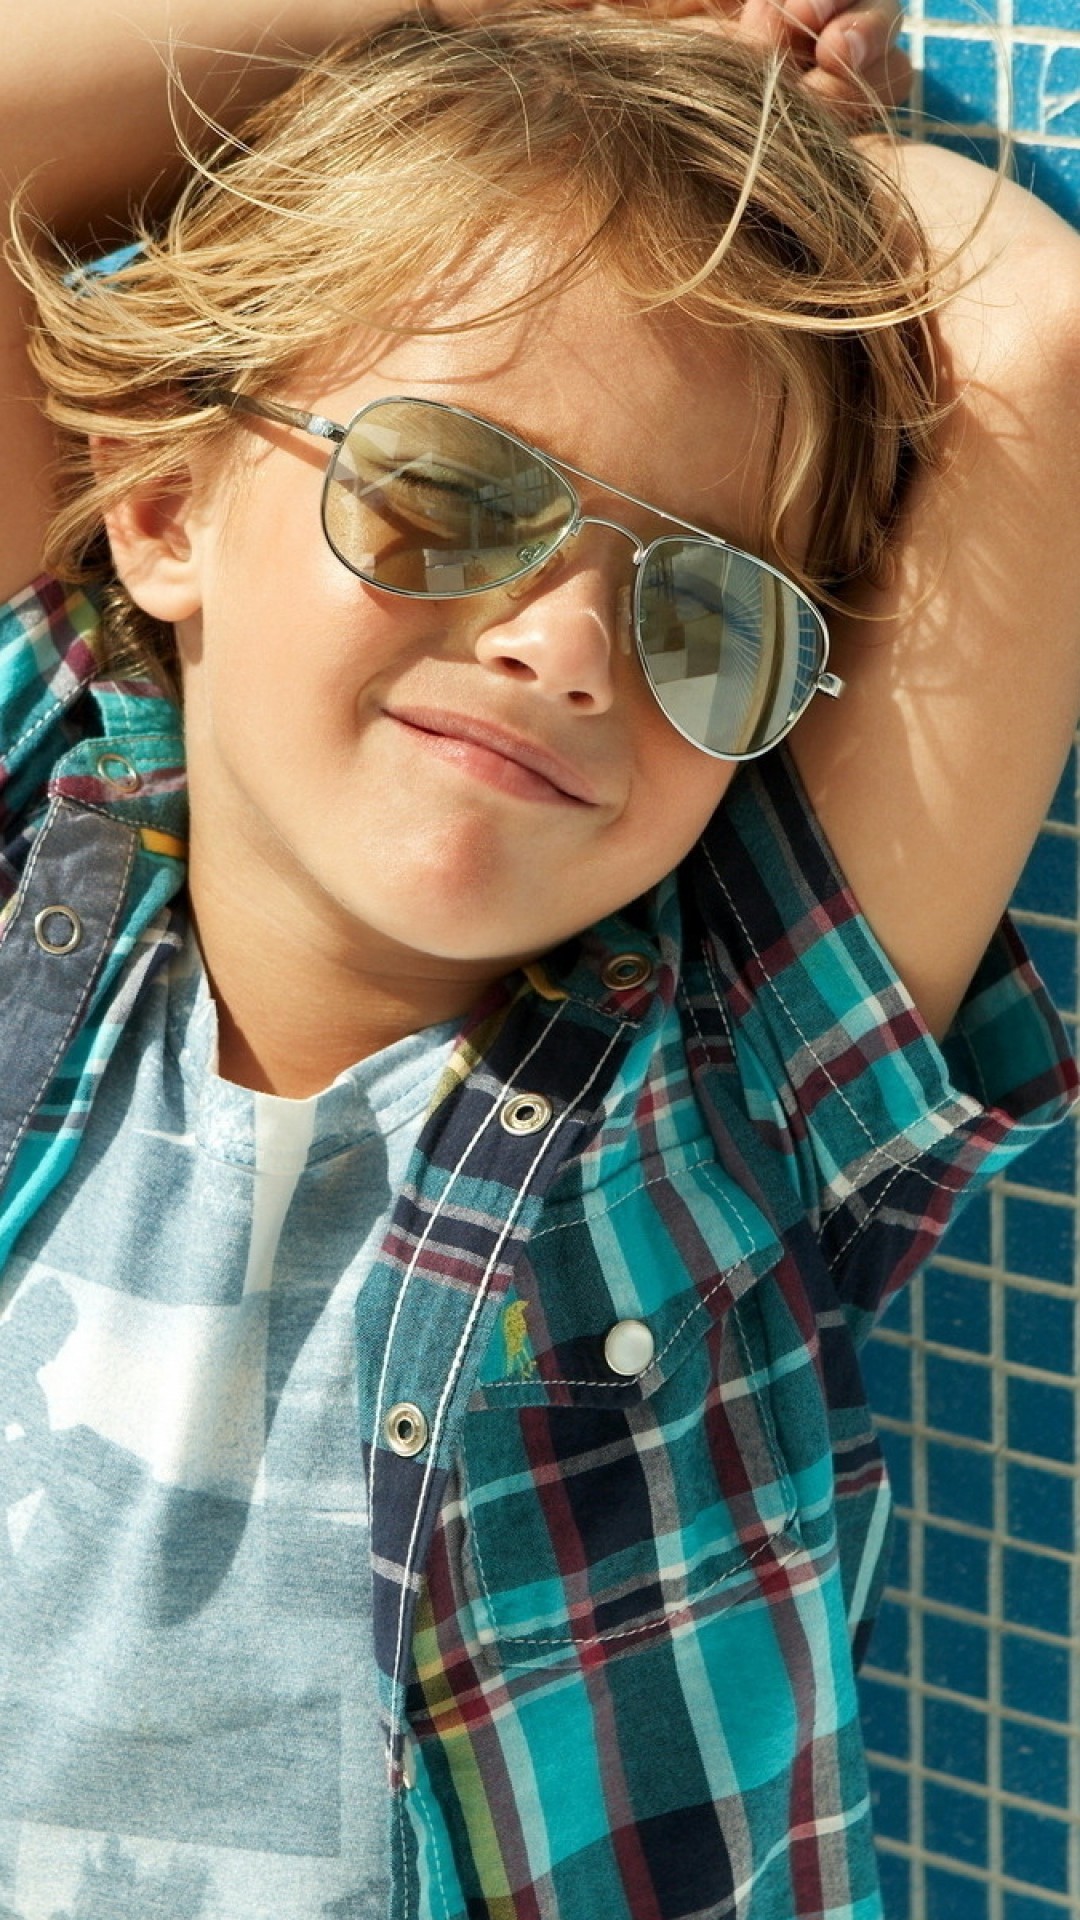 1080x1920  Wallpaper Child, Stylish, Sunglasses, Cute, Boy